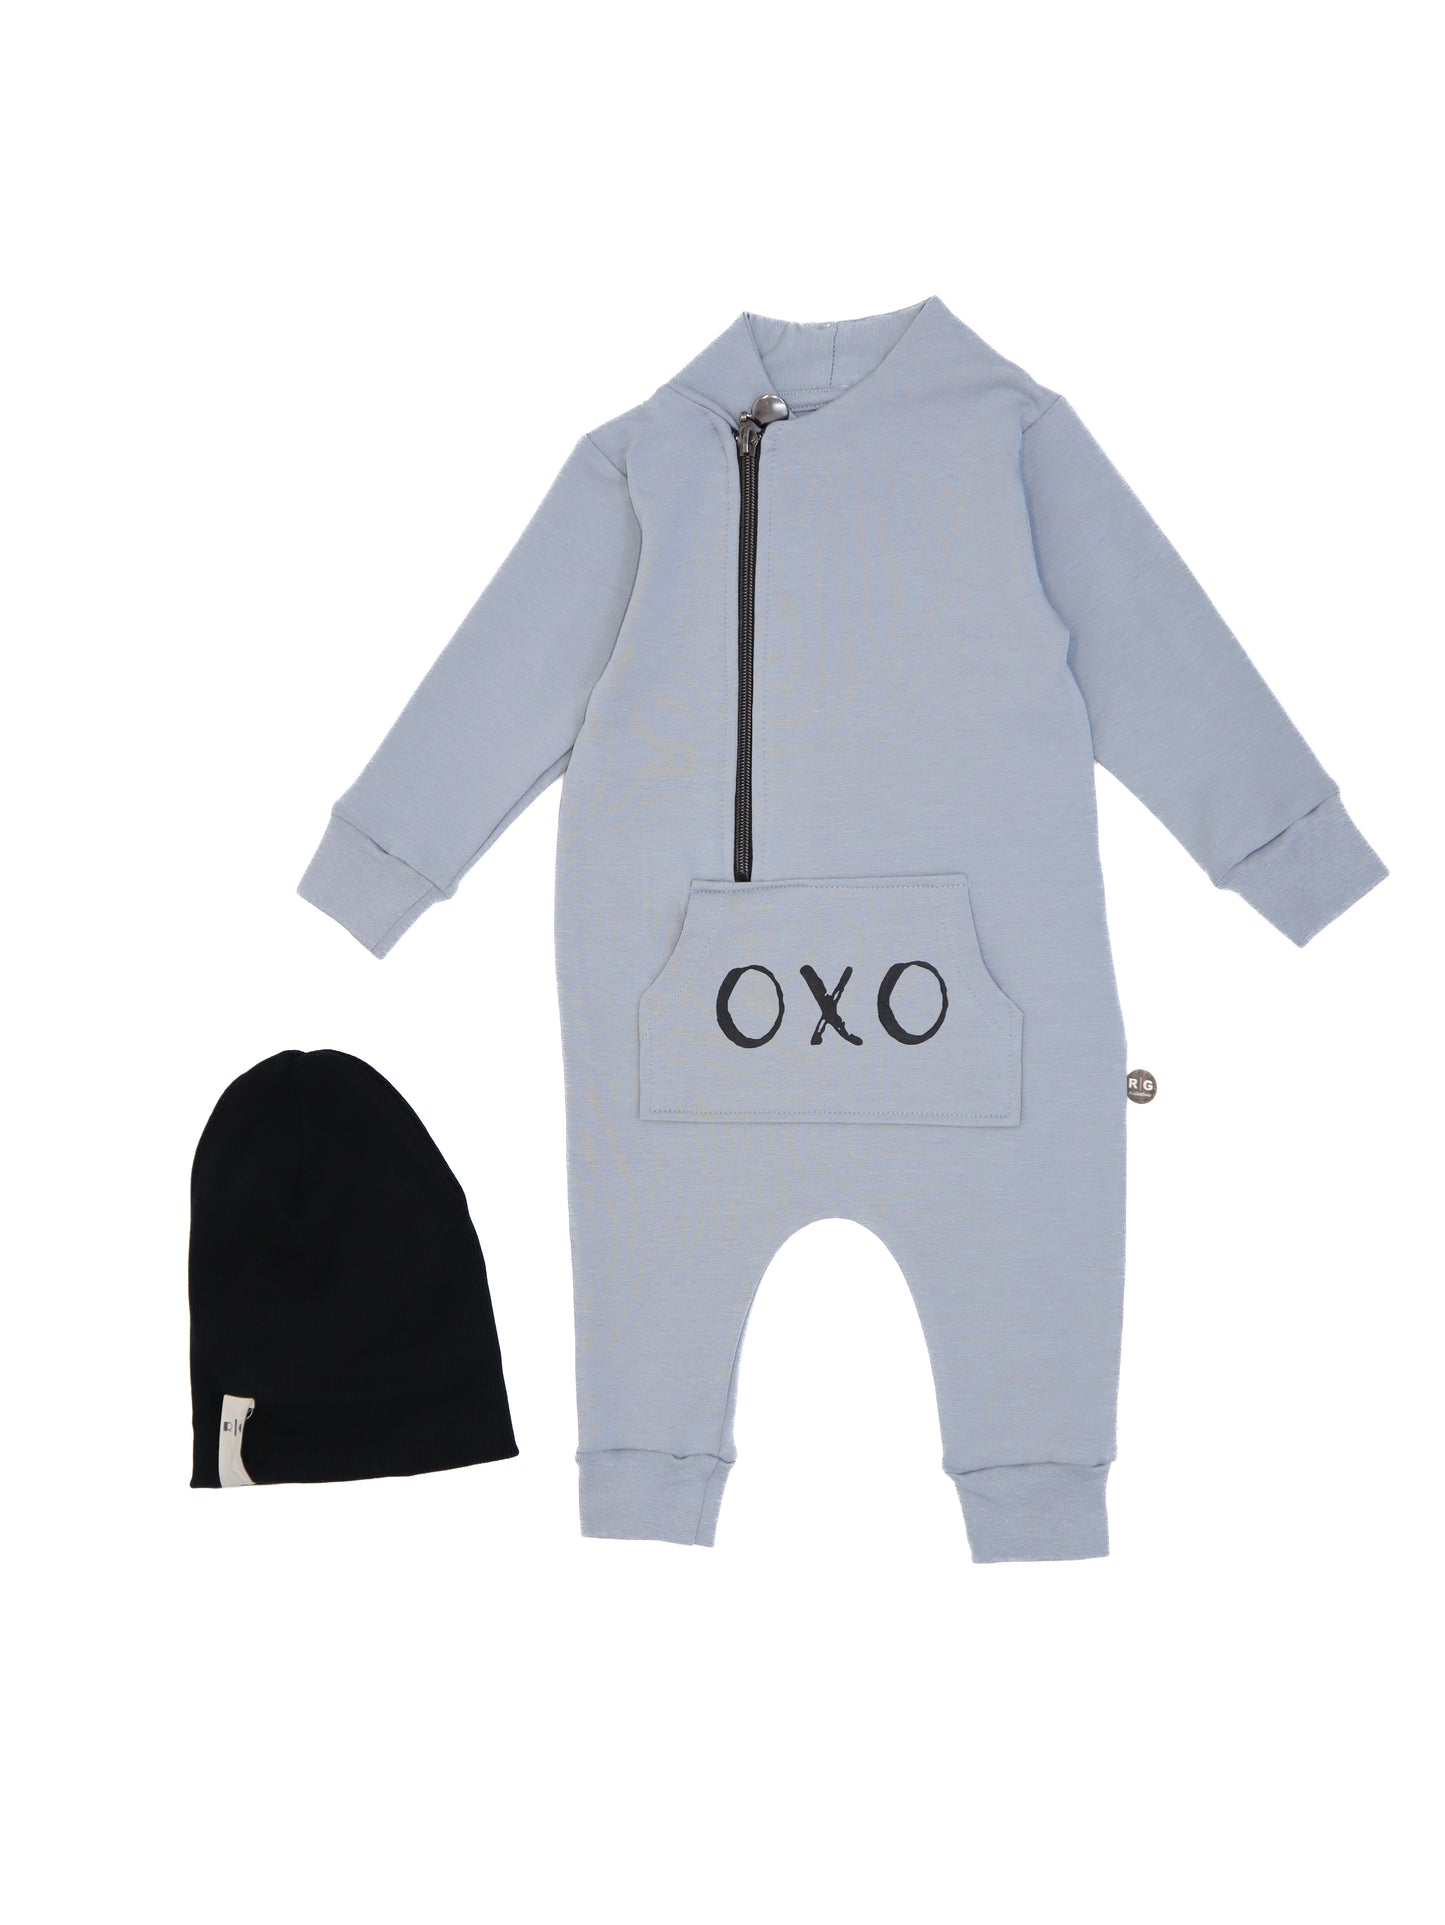 'OXO' Baskılı Bebek Tulumu